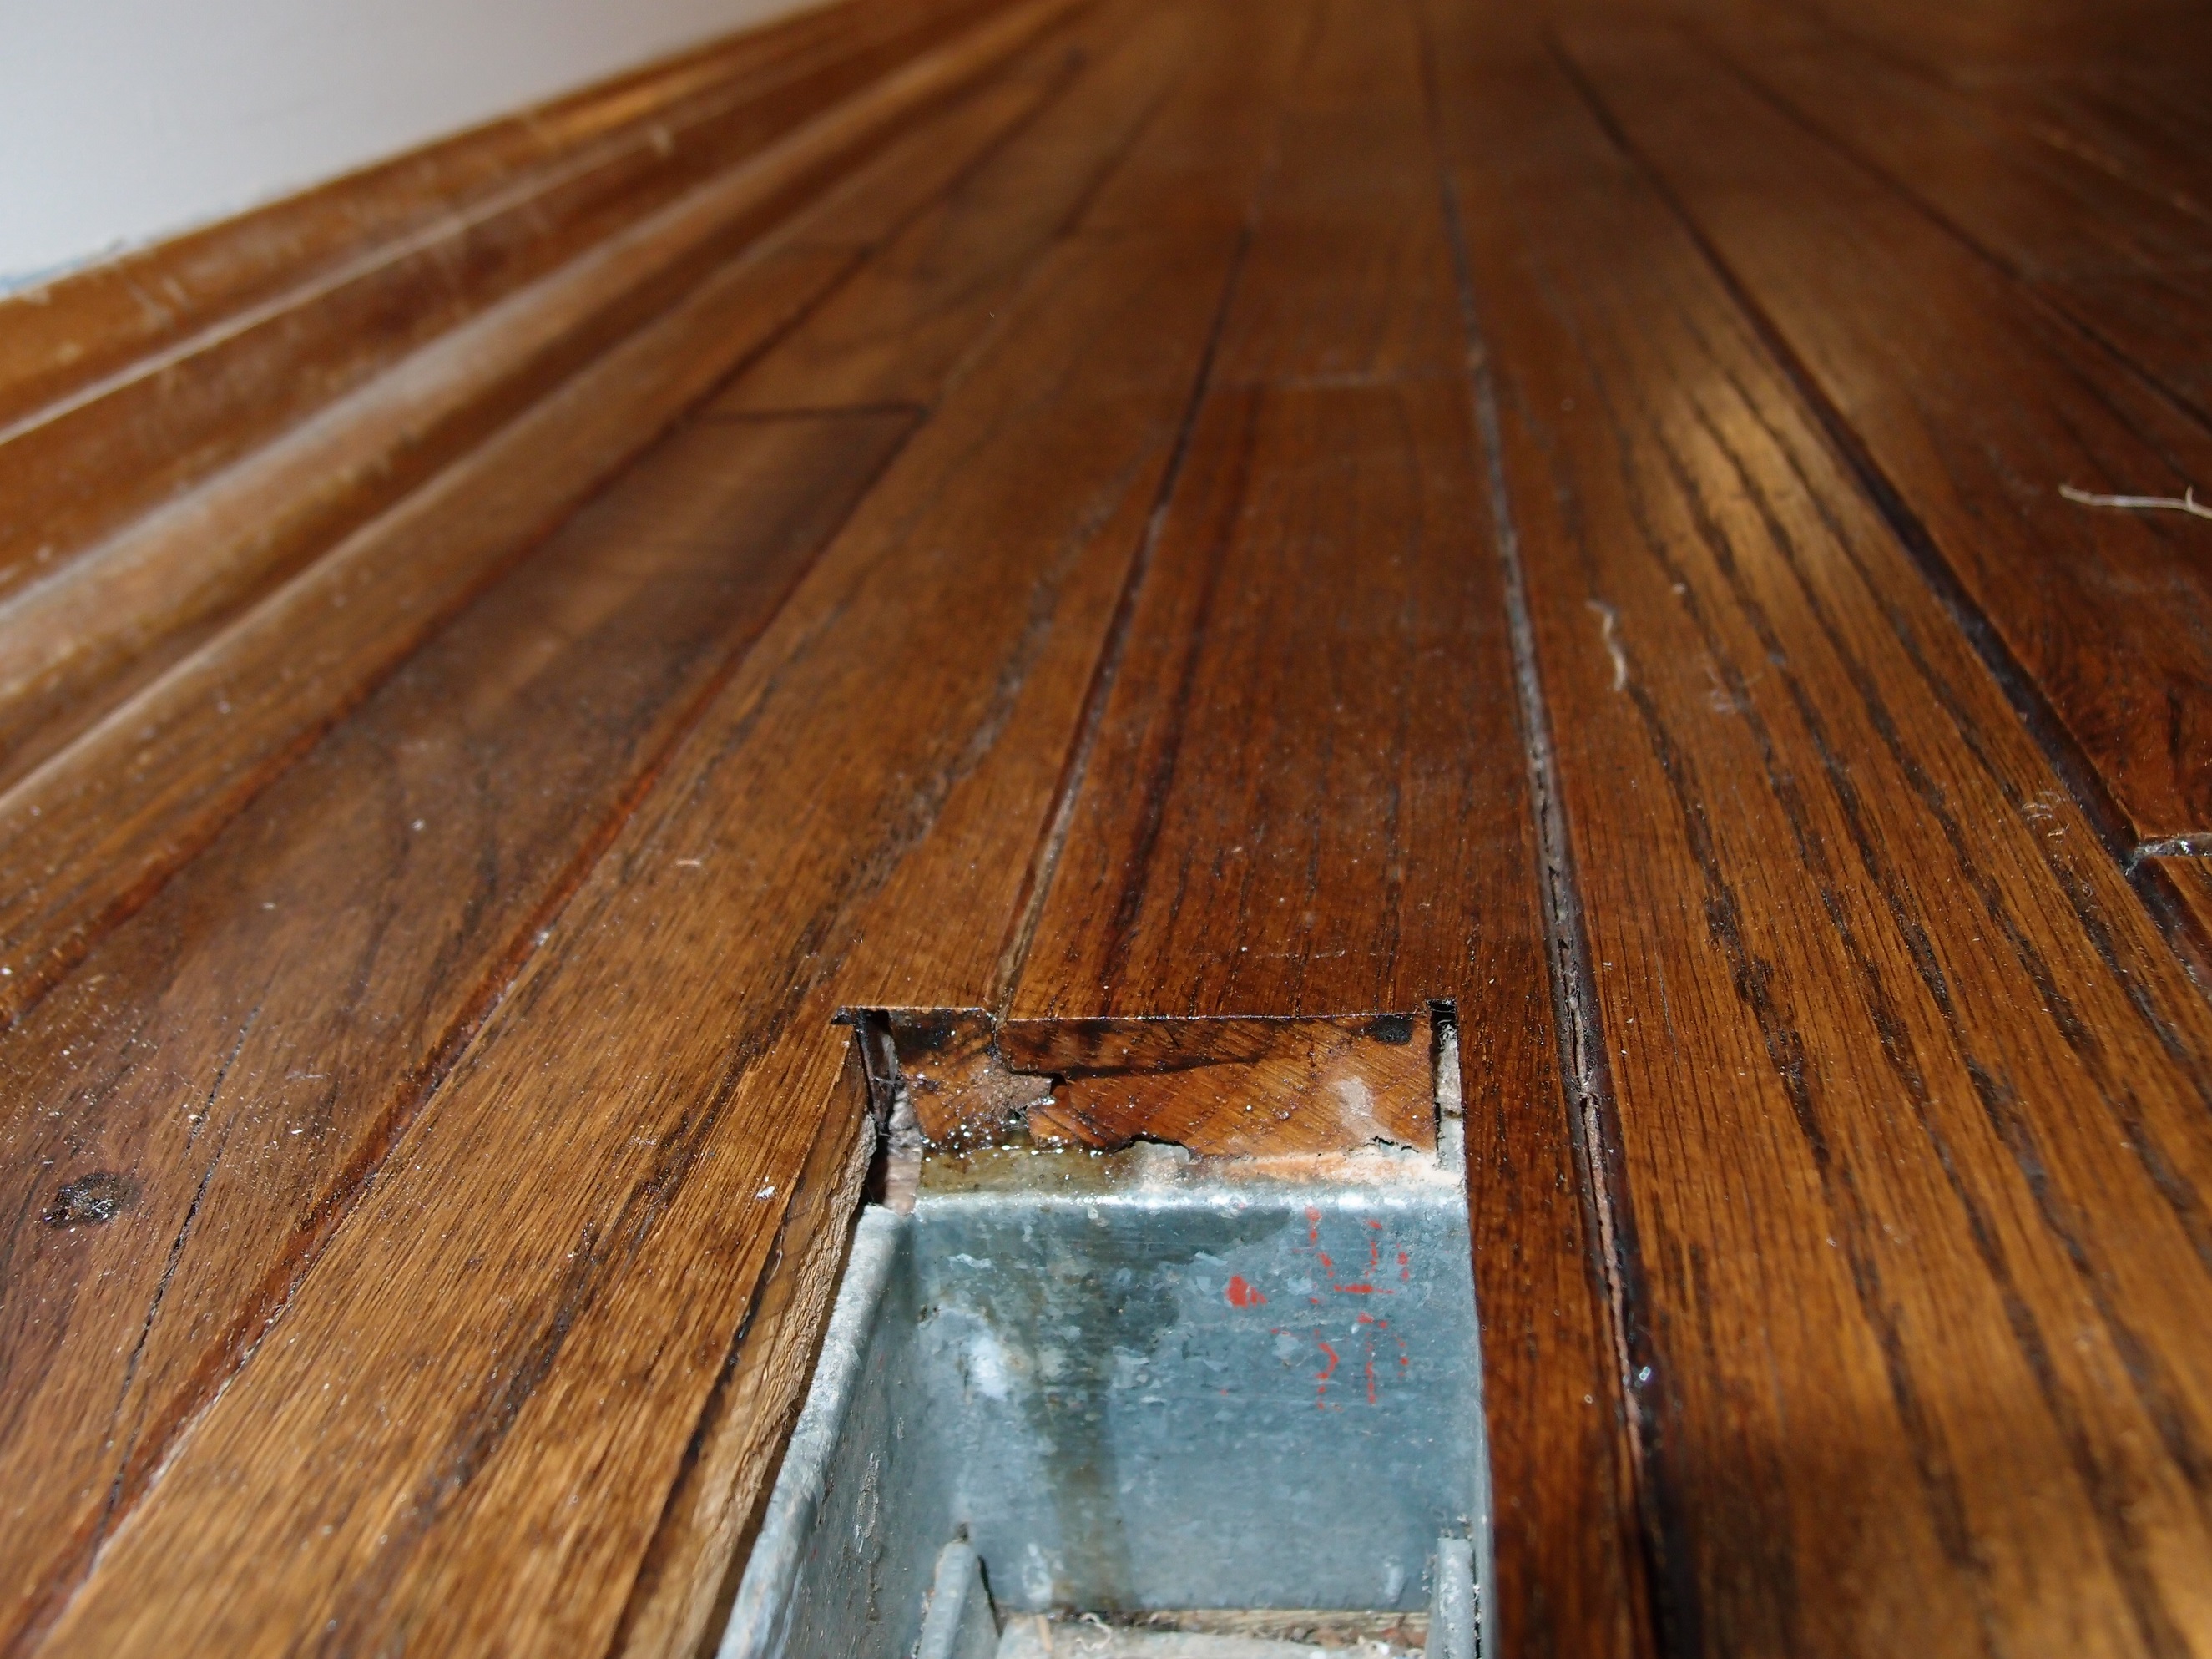 Refinishing Hardwood Floor With Edge, Can You Refinish Bruce Prefinished Hardwood Floors